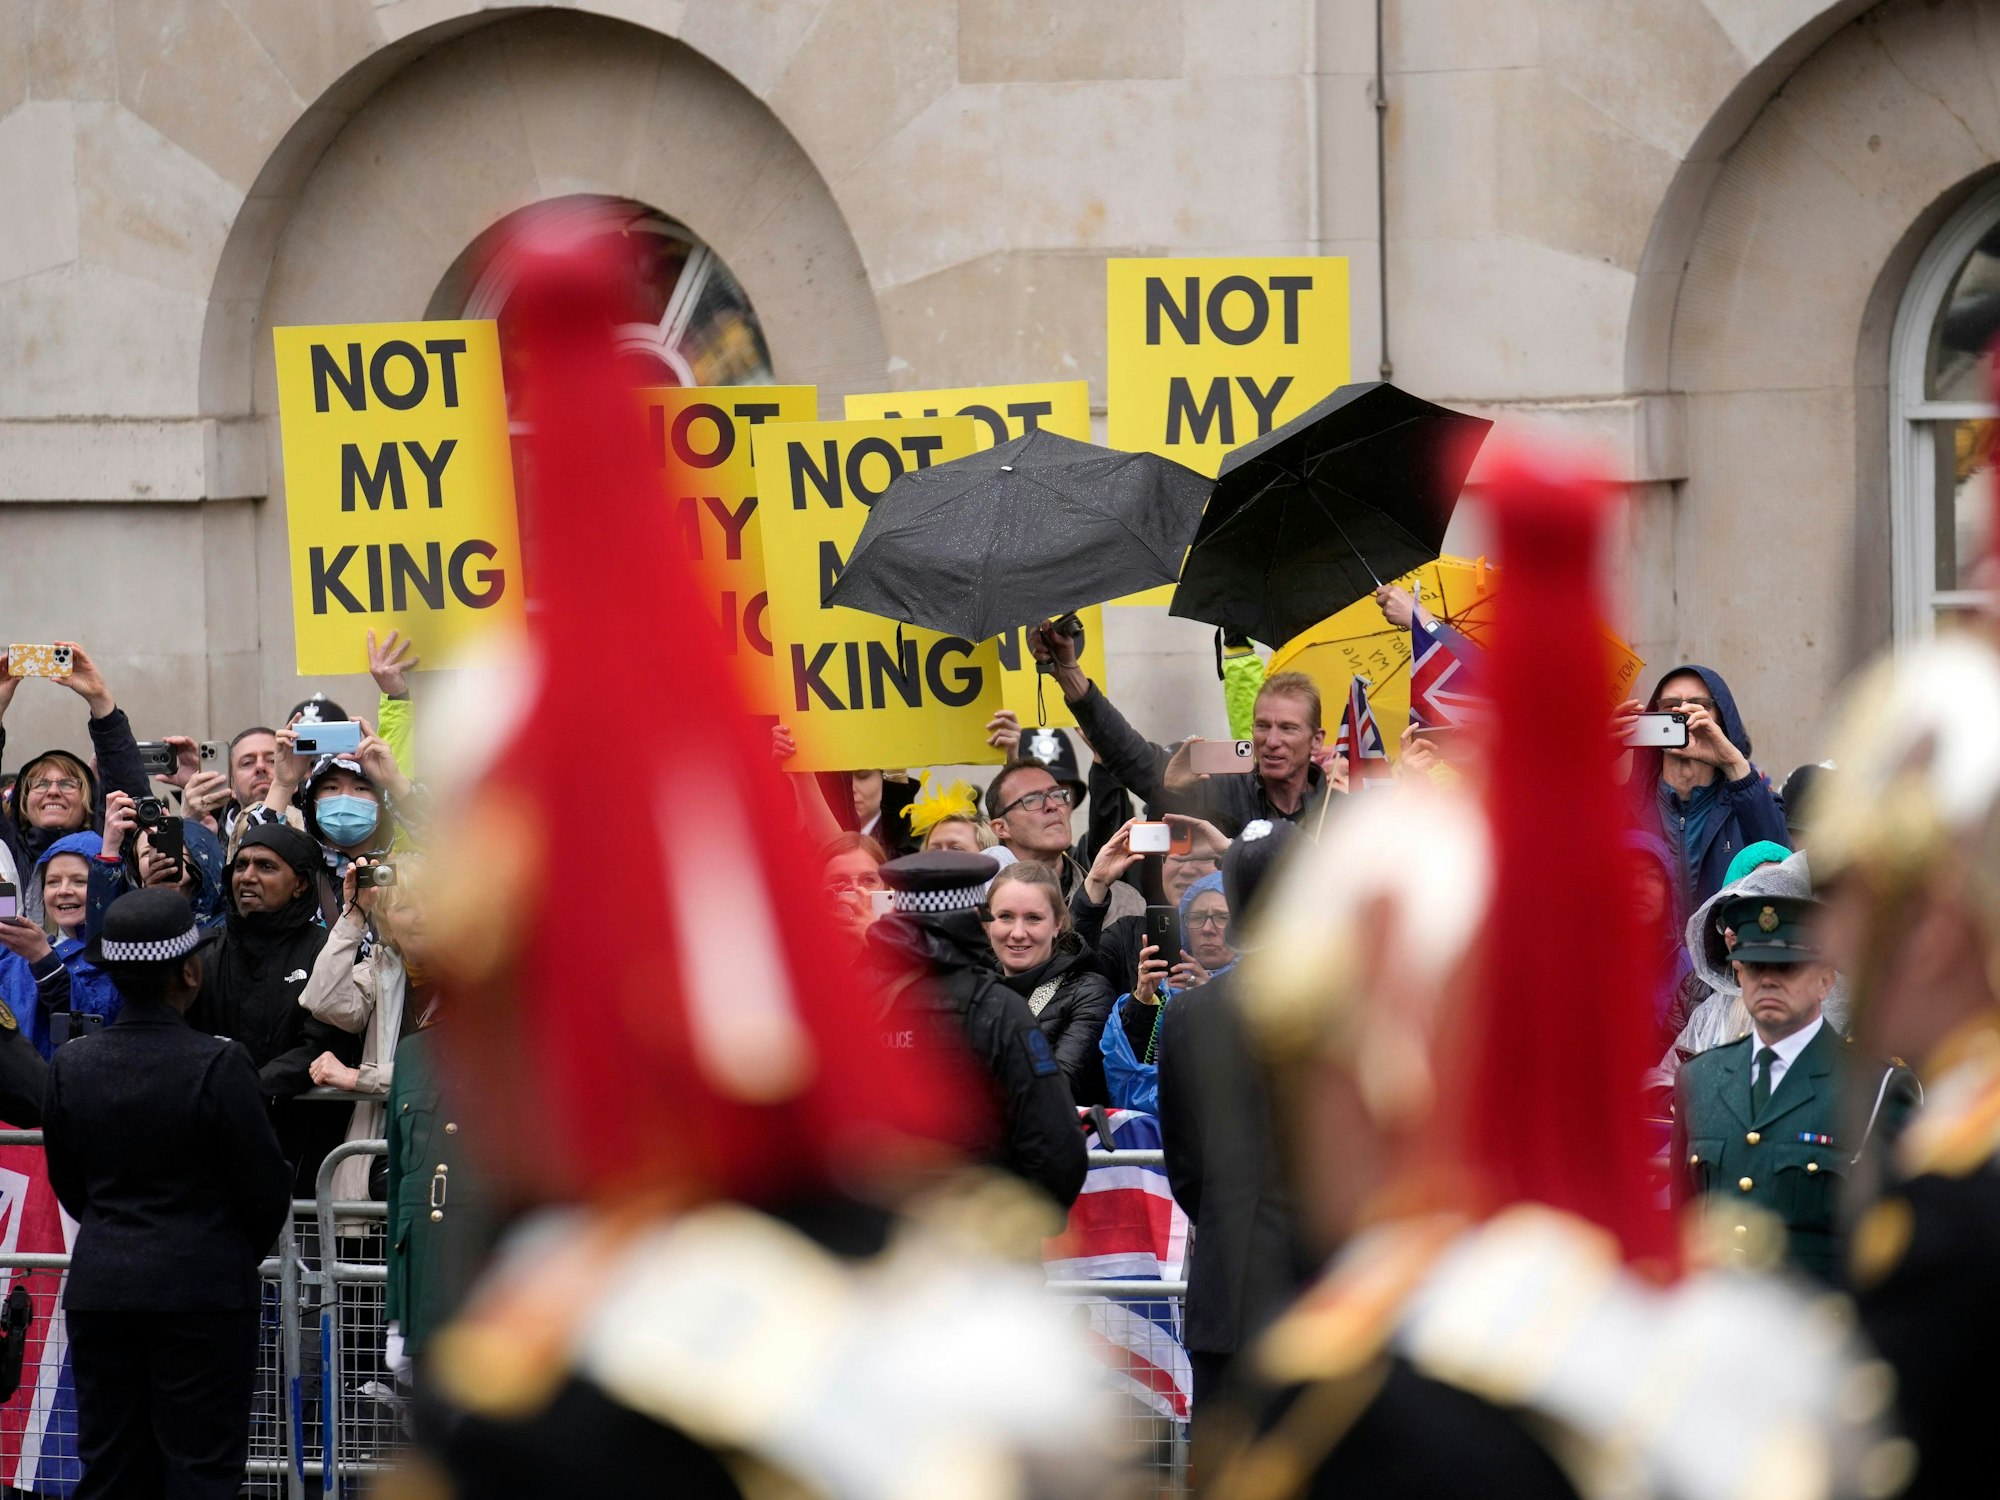 Mitglieder der antimonarchistischen Gruppe Republic protestieren entlang der Route des Festzugs vor der Krönung von König Charles III. Bei Protesten gegen die Krönung sind nach Angaben von Aktivisten sechs Menschen festgenommen worden. Darunter sei auch der Chef der Organisation Republic.